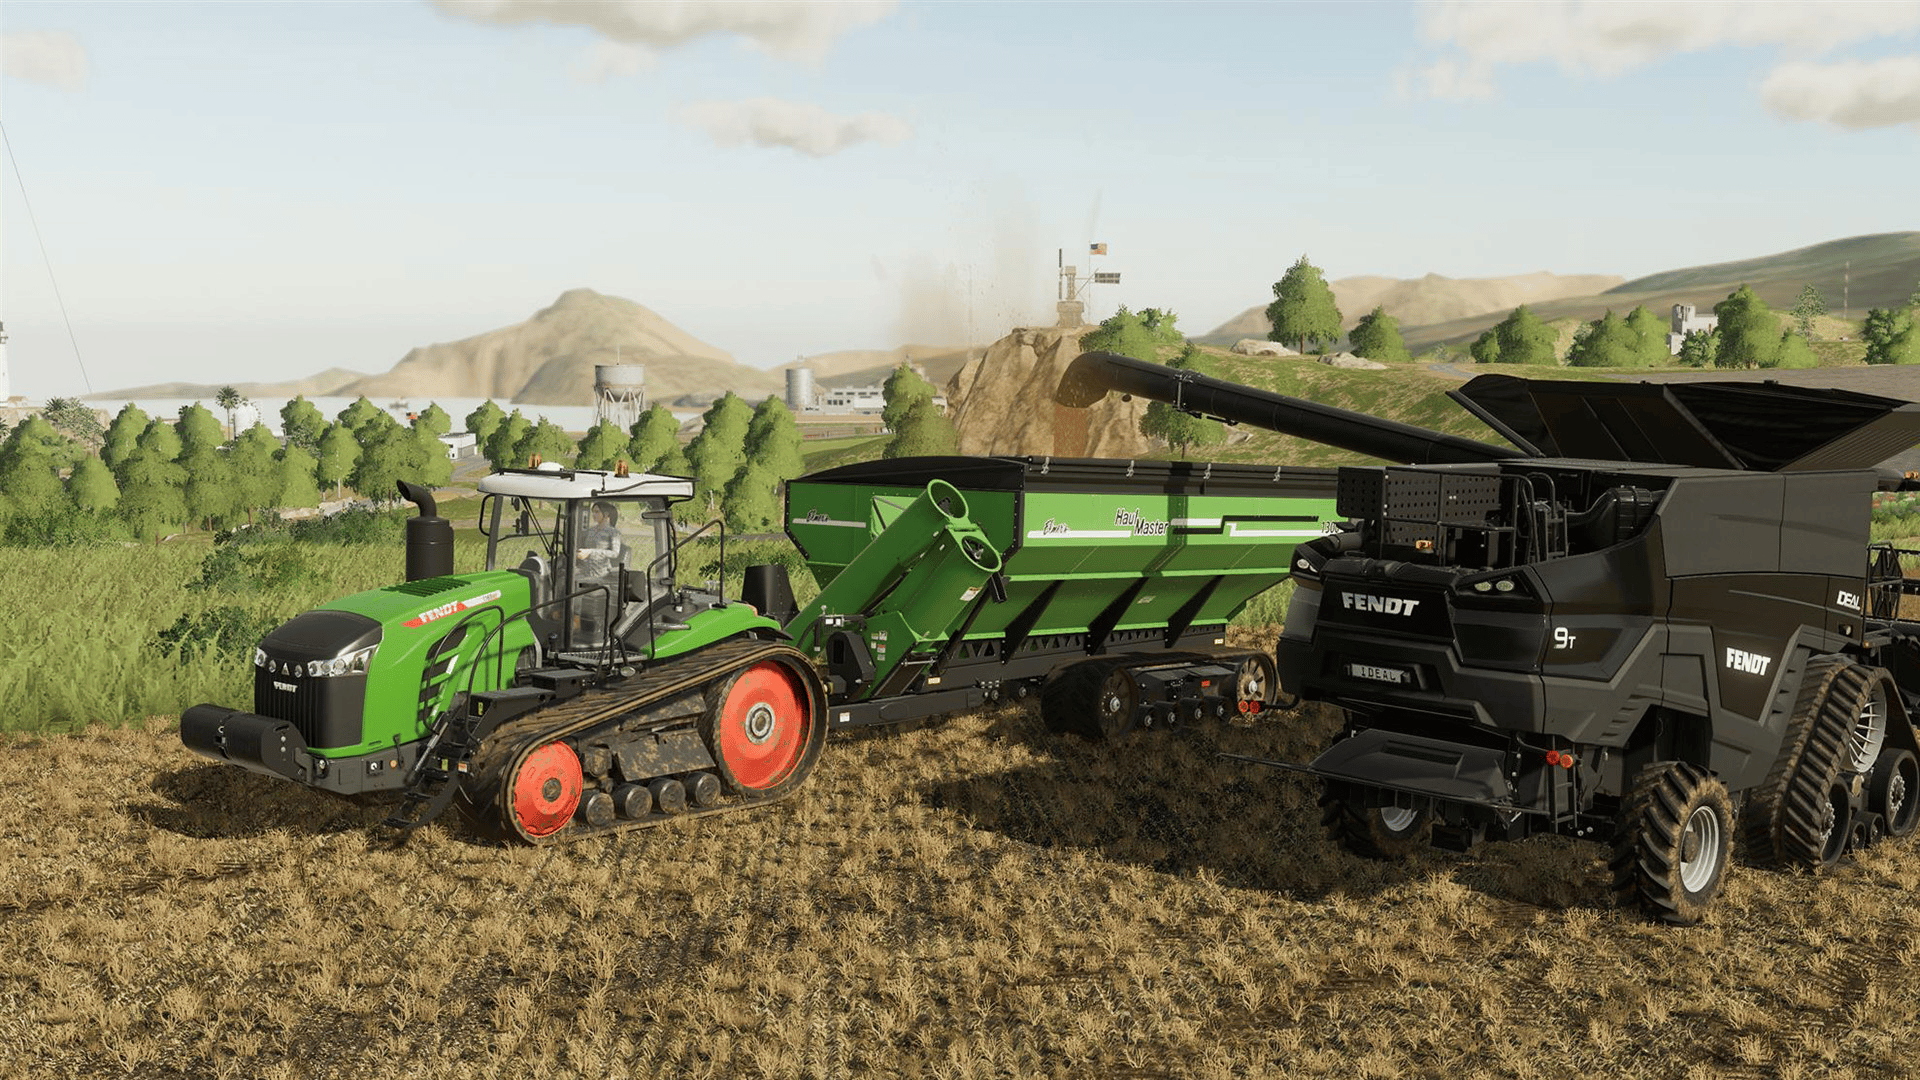 Vers un DLC forestier Rottne pour Farming Simulator 19 ? - SimulAgri.fr